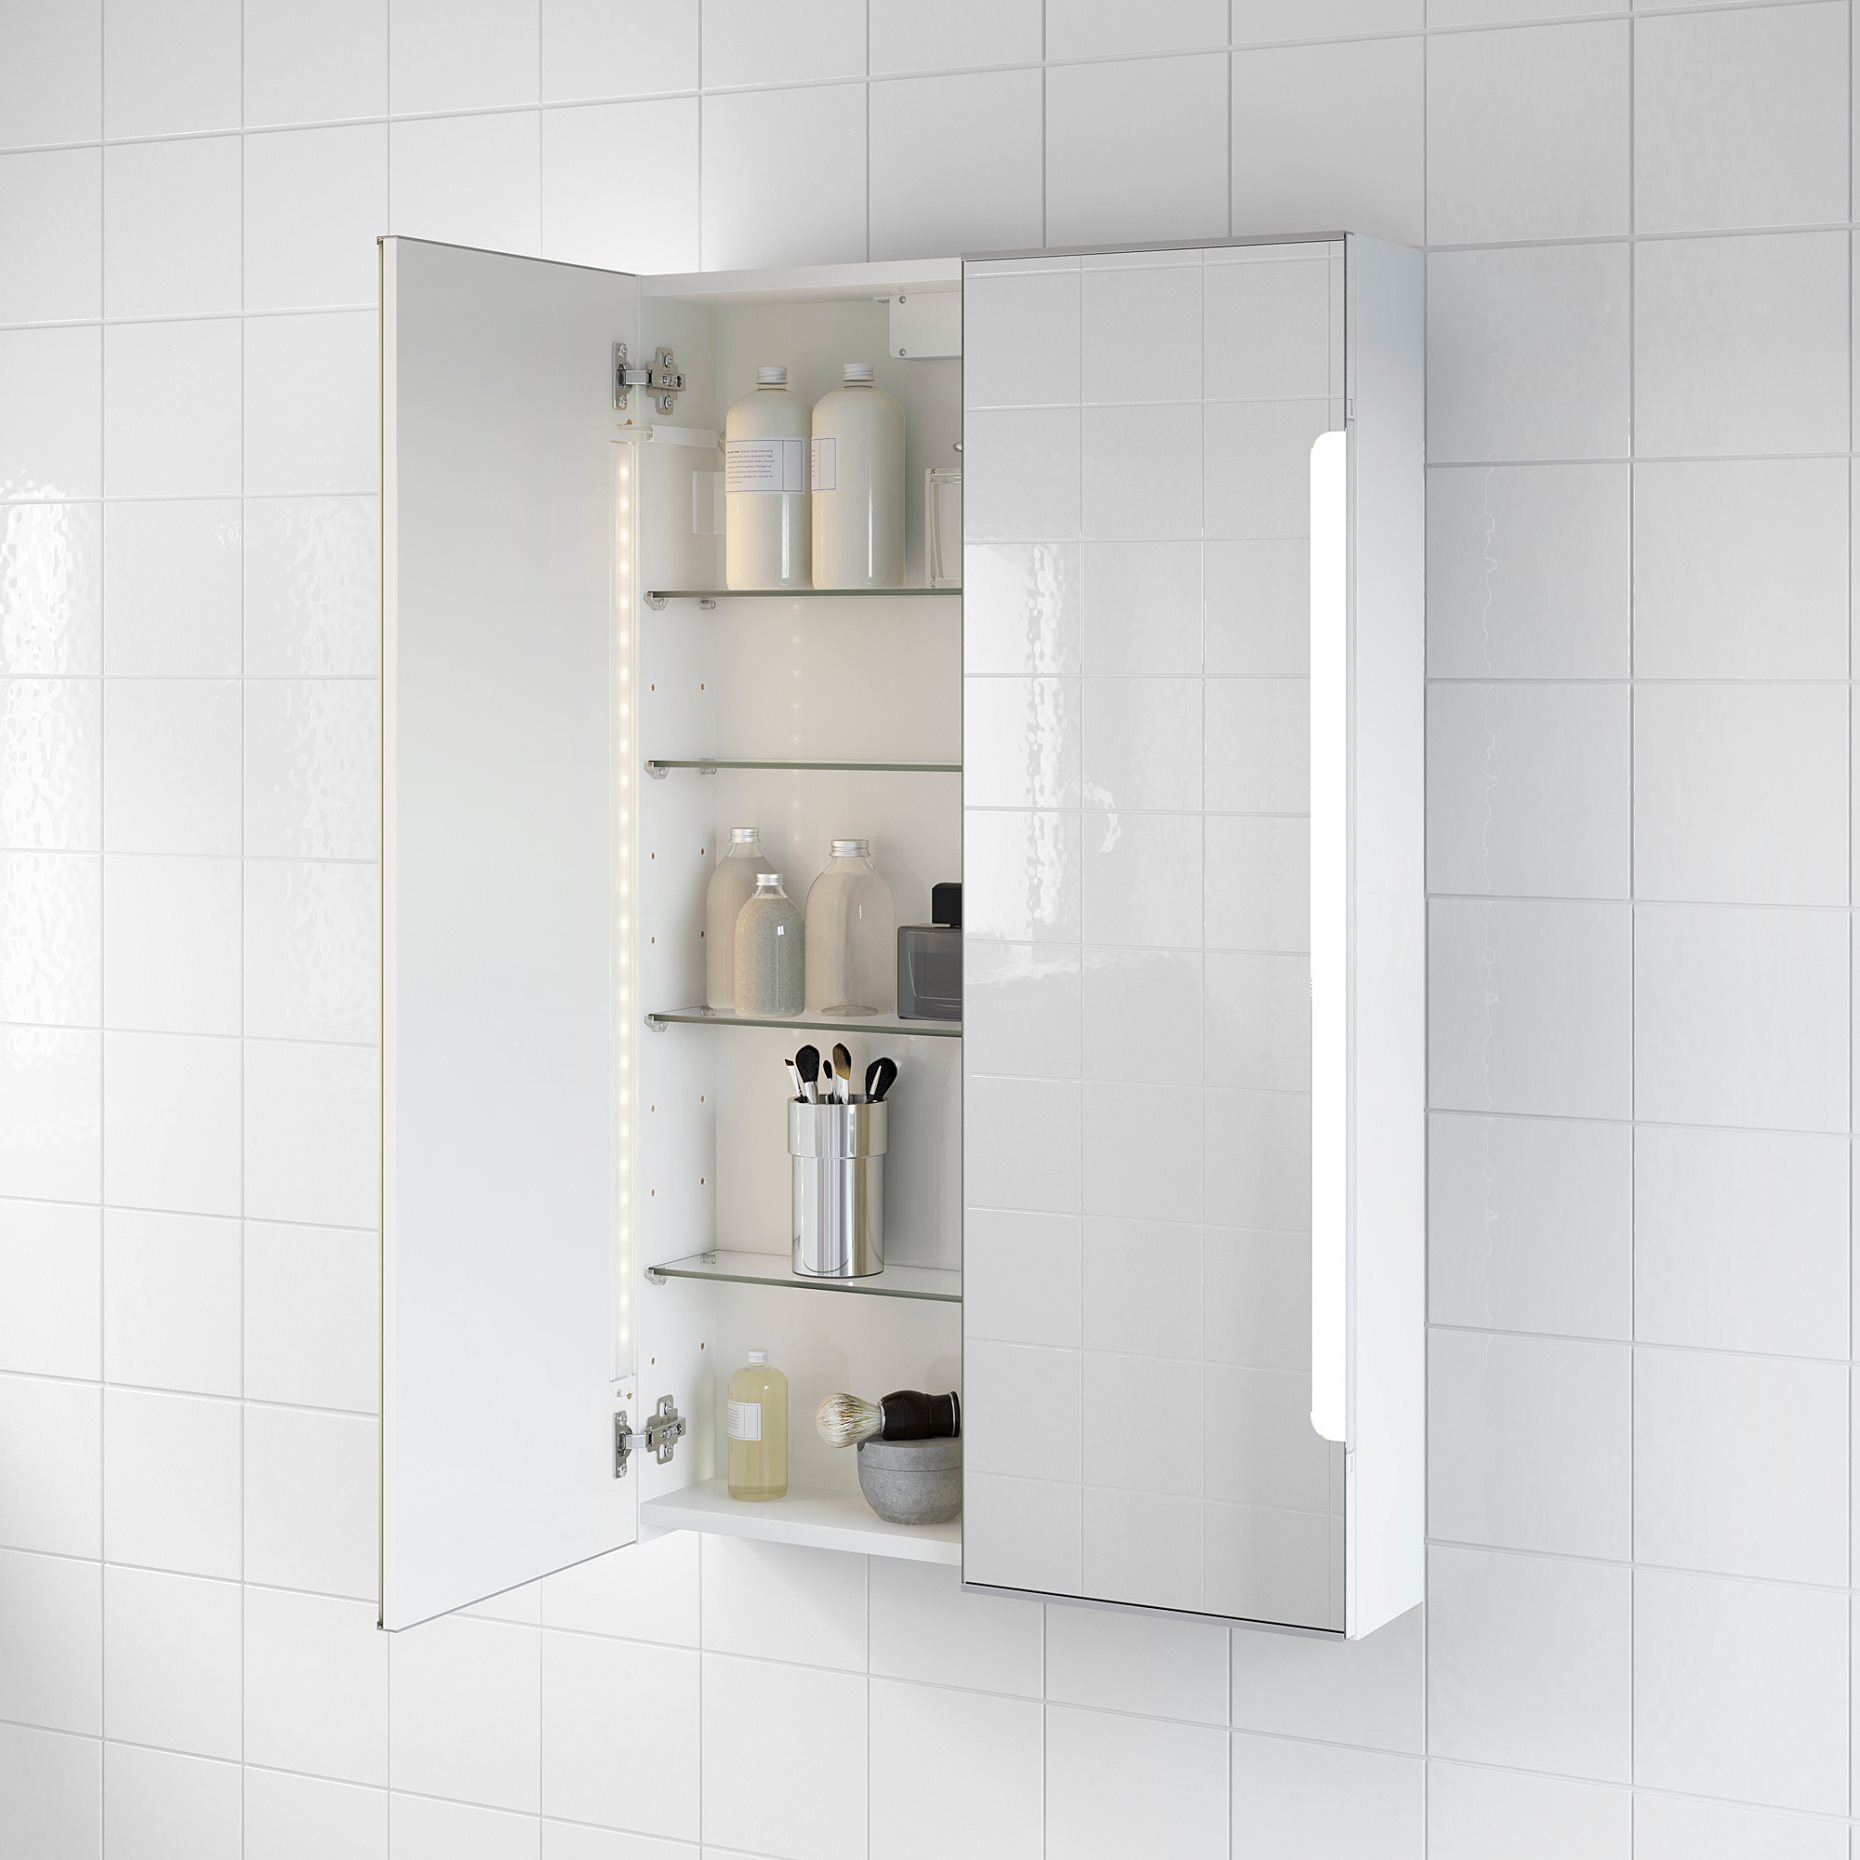 STORJORM, огледален шкаф с 2 врати/вградено осветление, 60x14x96 см, бяло, 402.481.22